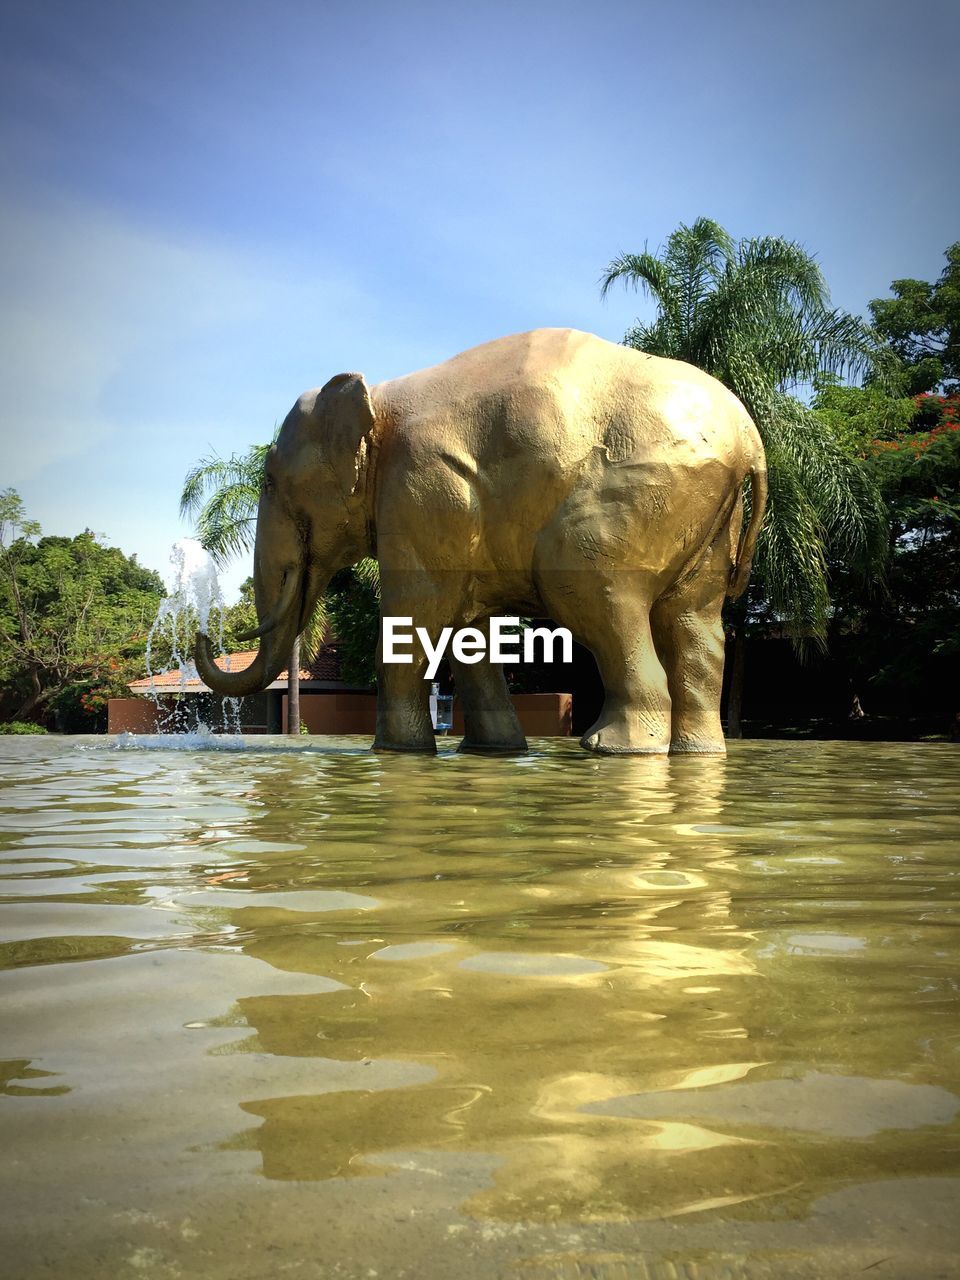 ELEPHANT IN WATER